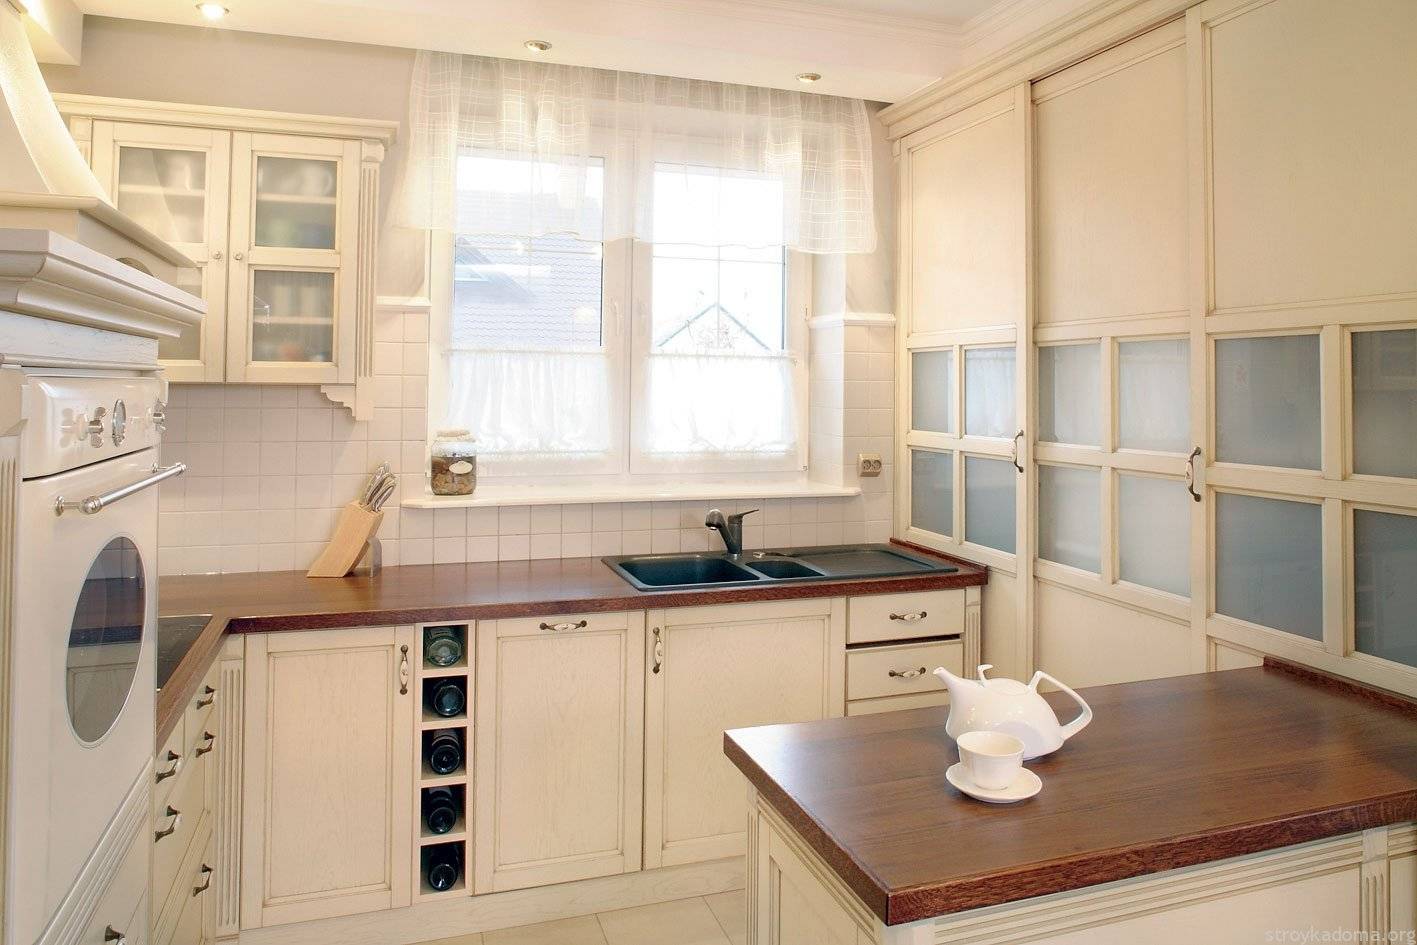 Дизайн кухни с окном - варианты планировок и их оформление
дизайн кухни с окном - варианты планировок и их оформление